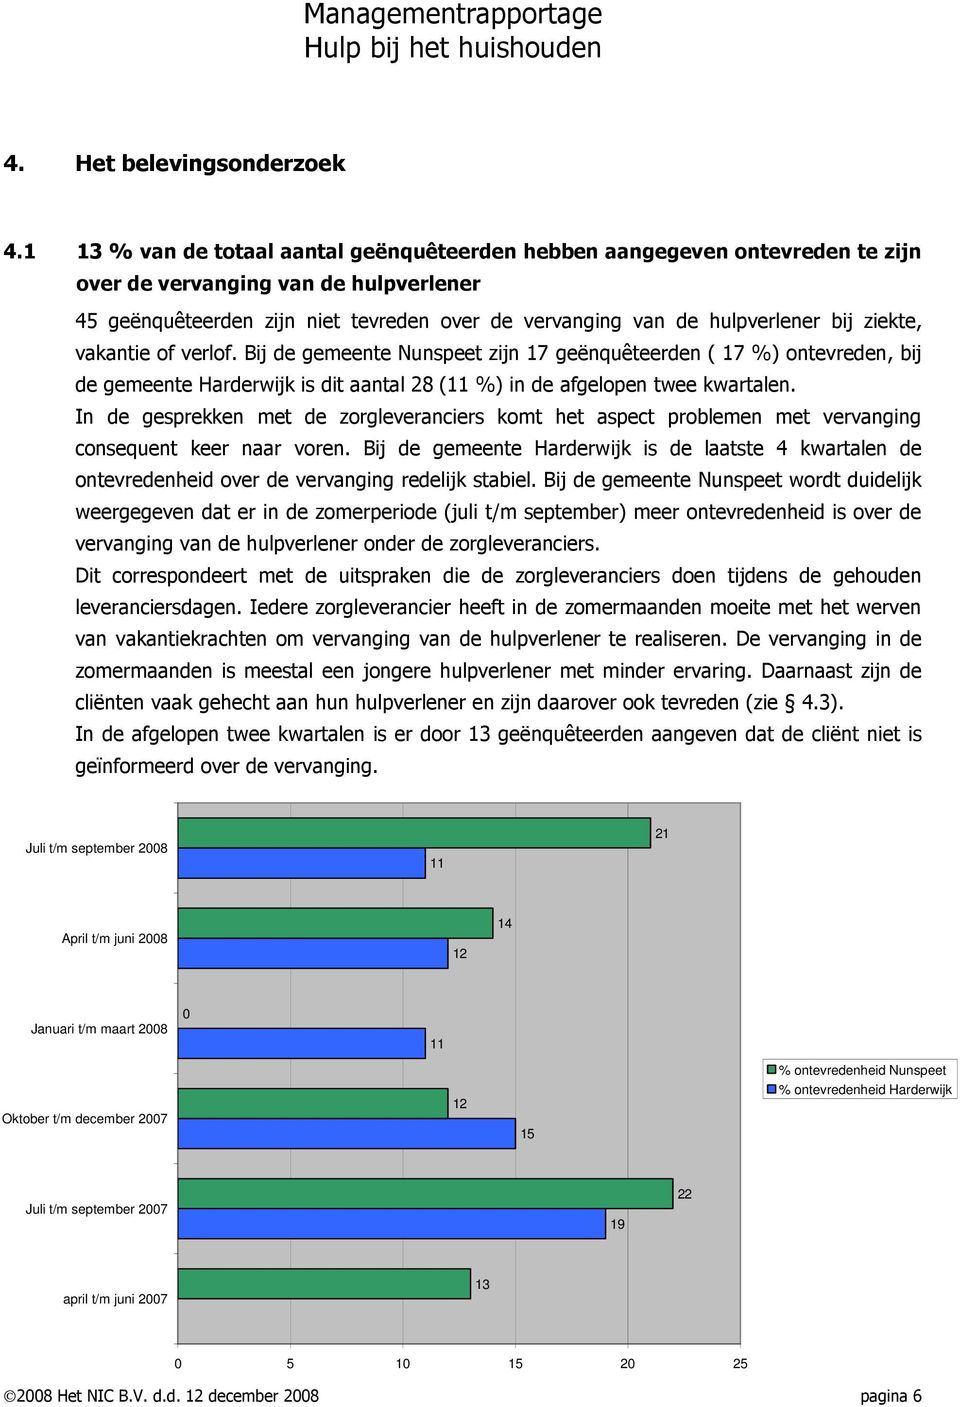 ziekte, vakantie of verlof. Bij de gemeente Nunspeet zijn 17 geënquêteerden ( 17 %) ontevreden, bij de gemeente Harderwijk is dit aantal 28 (11 %) in de afgelopen twee kwartalen.